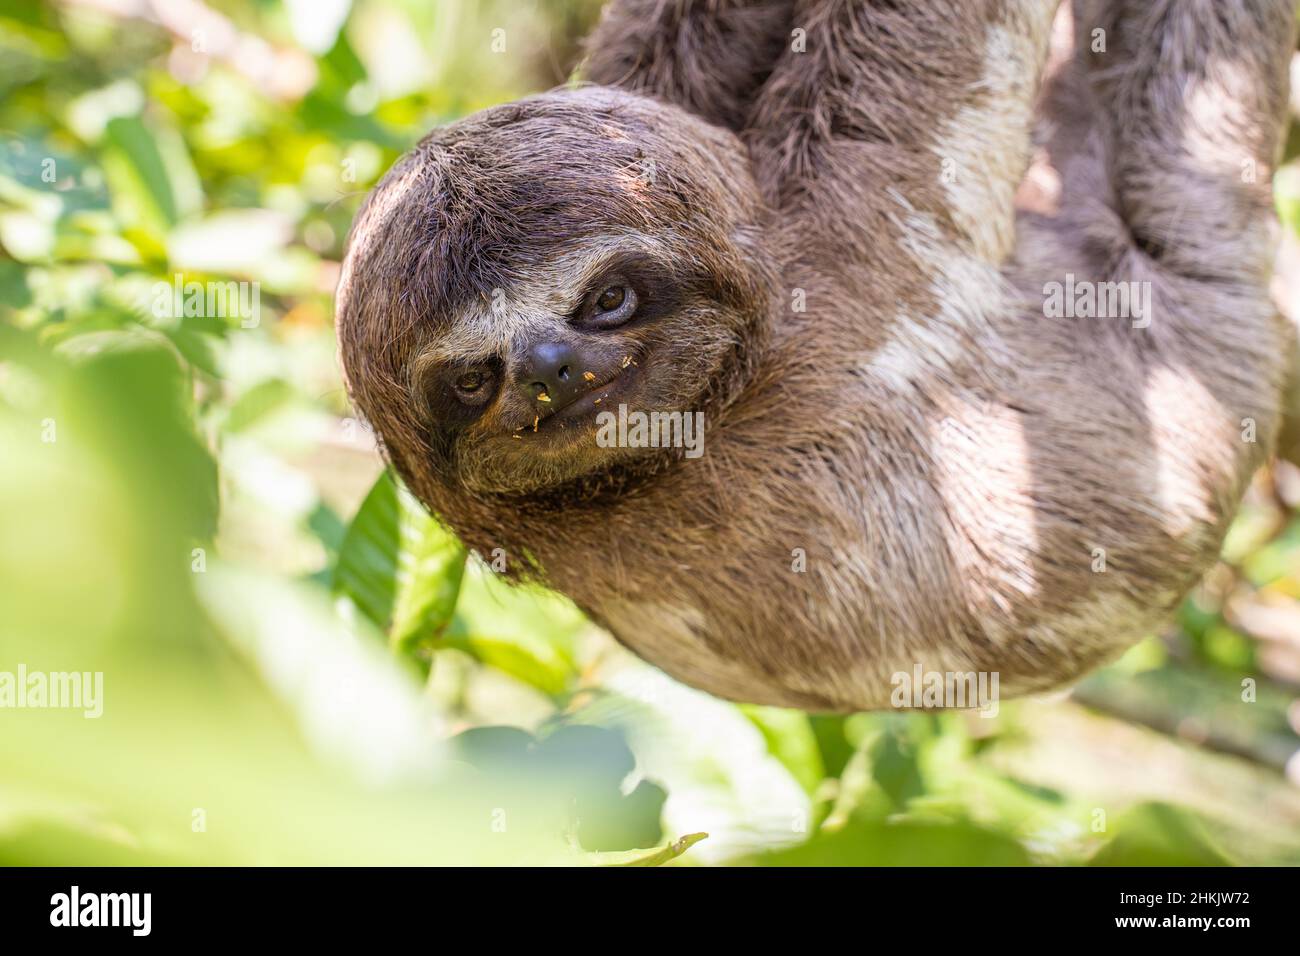 Baby sloth in the Amazon. At the Community November 3, The Village (La Aldea), Amazon, Peru. Stock Photo